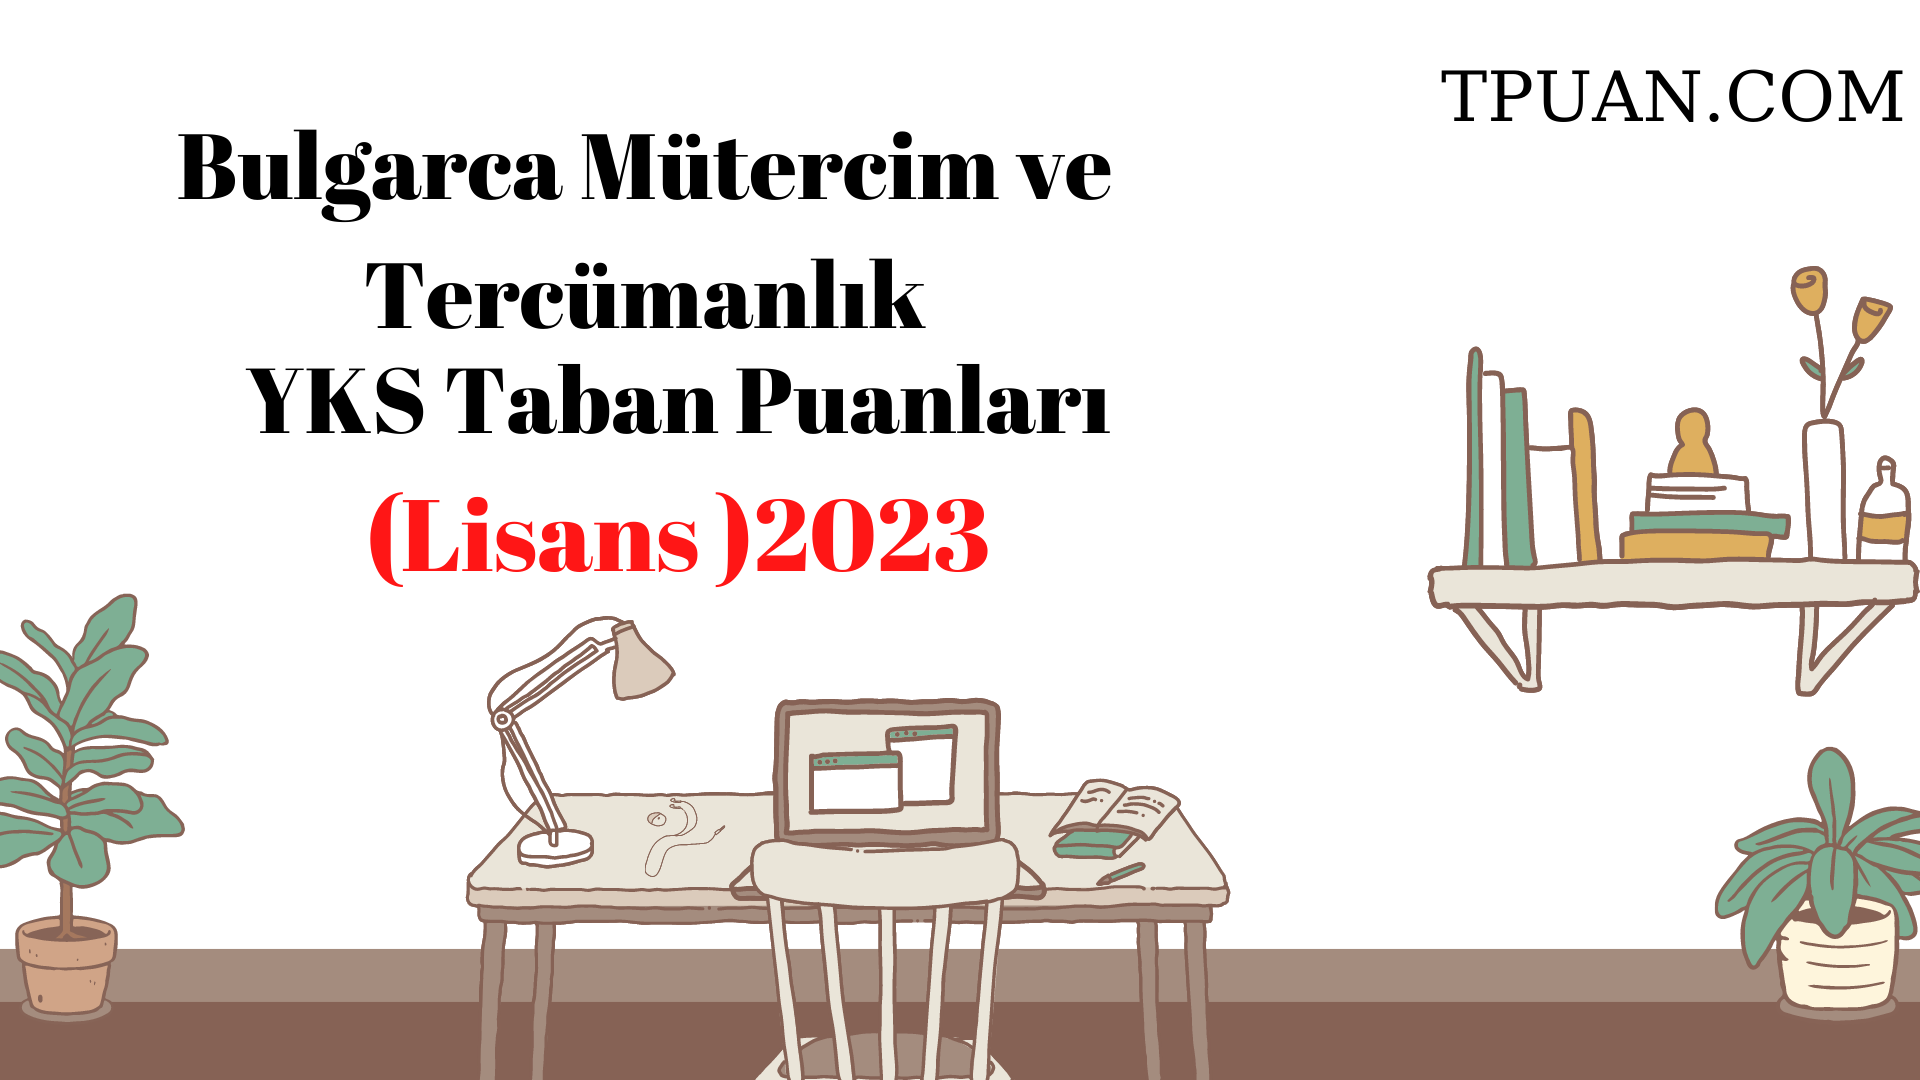  Bulgarca Mütercim ve Tercümanlık Bölümü YKS Taban Puanları (4 Yıllık) 2023